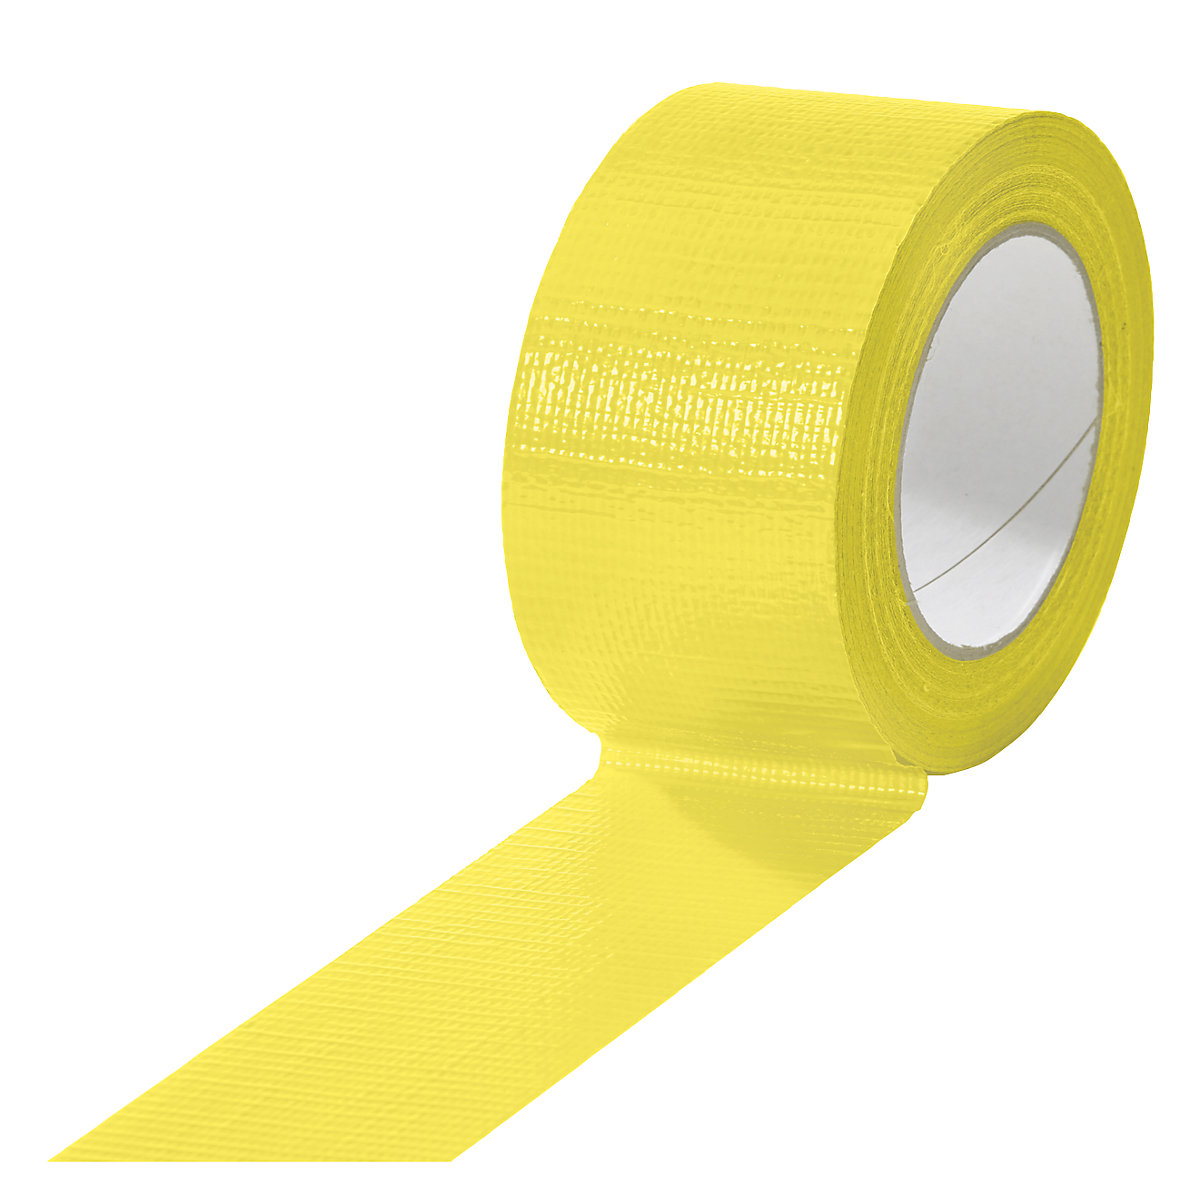 Traka od tkanine, u različitim bojama, pak. 18 rola, u žutoj boji, širina trake 50 mm-5